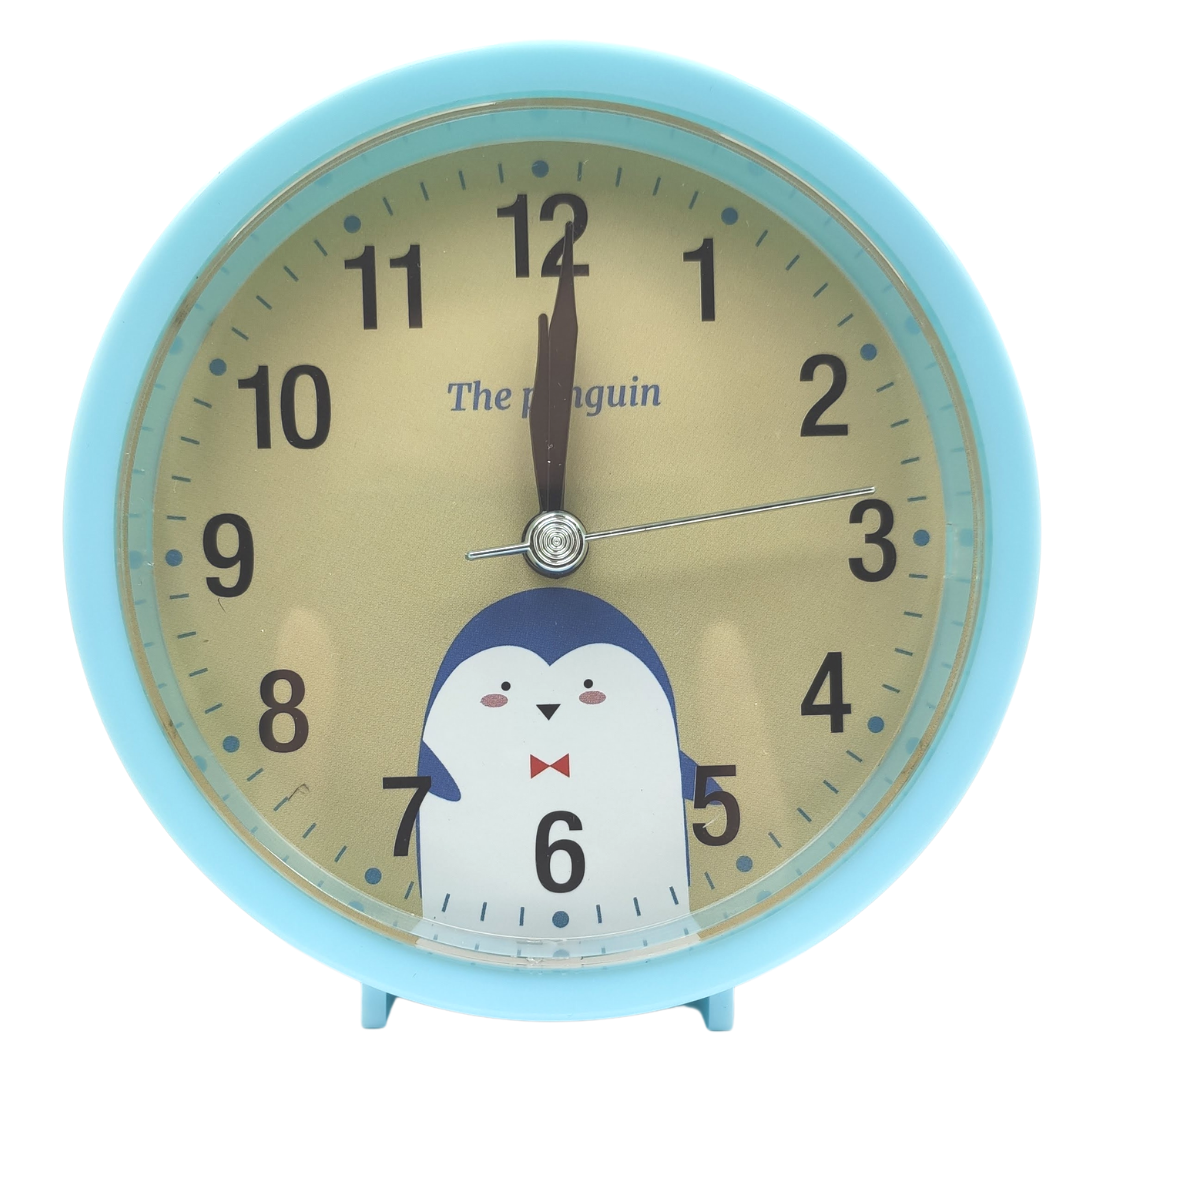 Relógio Despertador Analogico Estilo Antigo Pequeno Alarme Retrô Redondo Azul